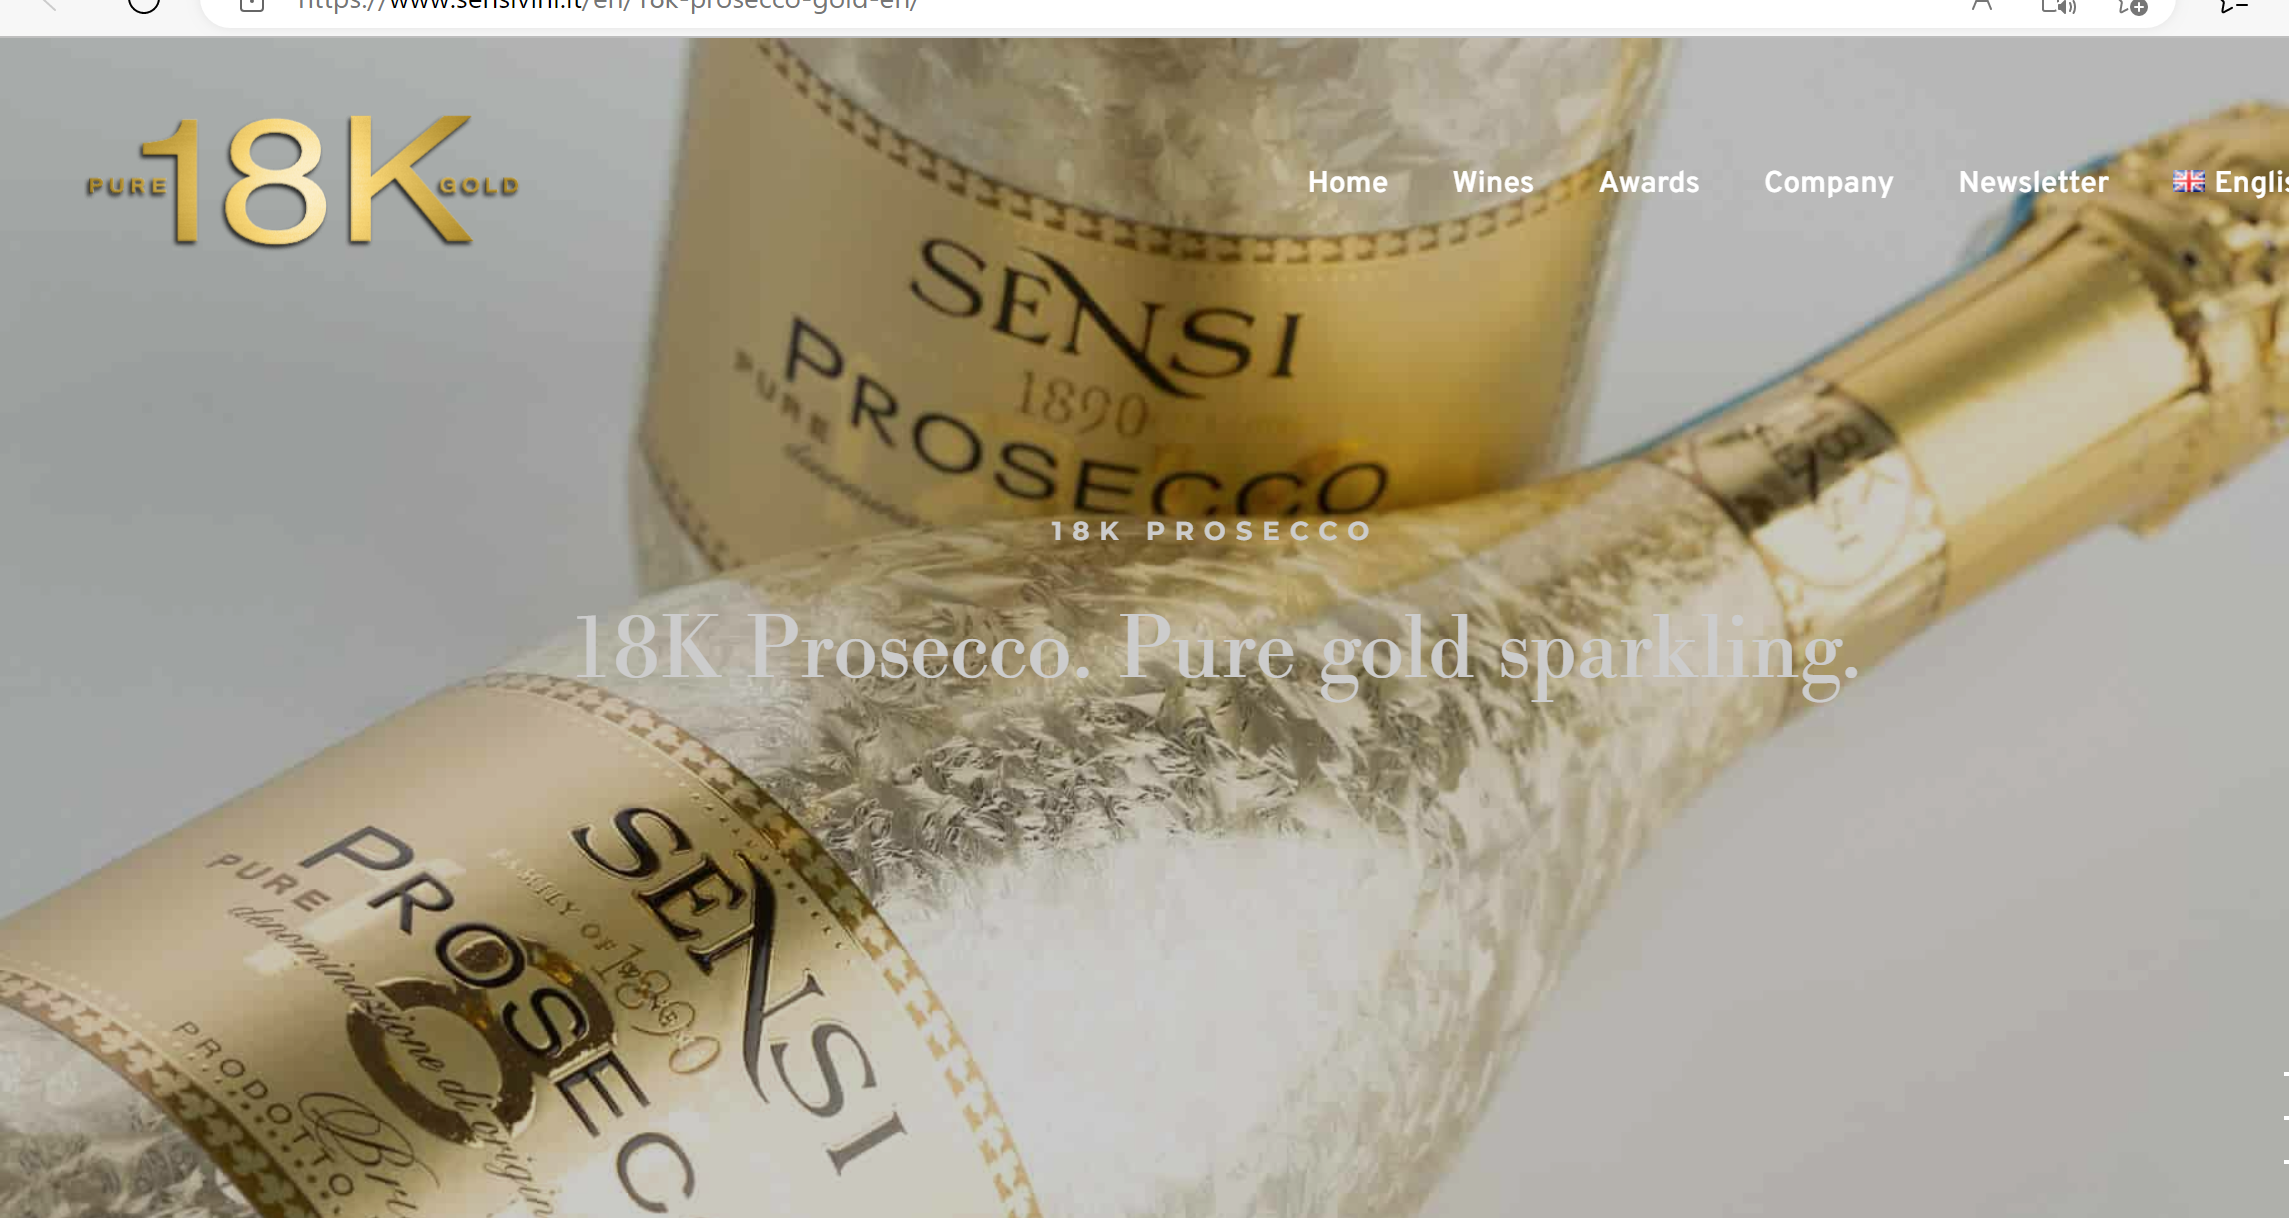 2 bottles of Sensi Prosecco